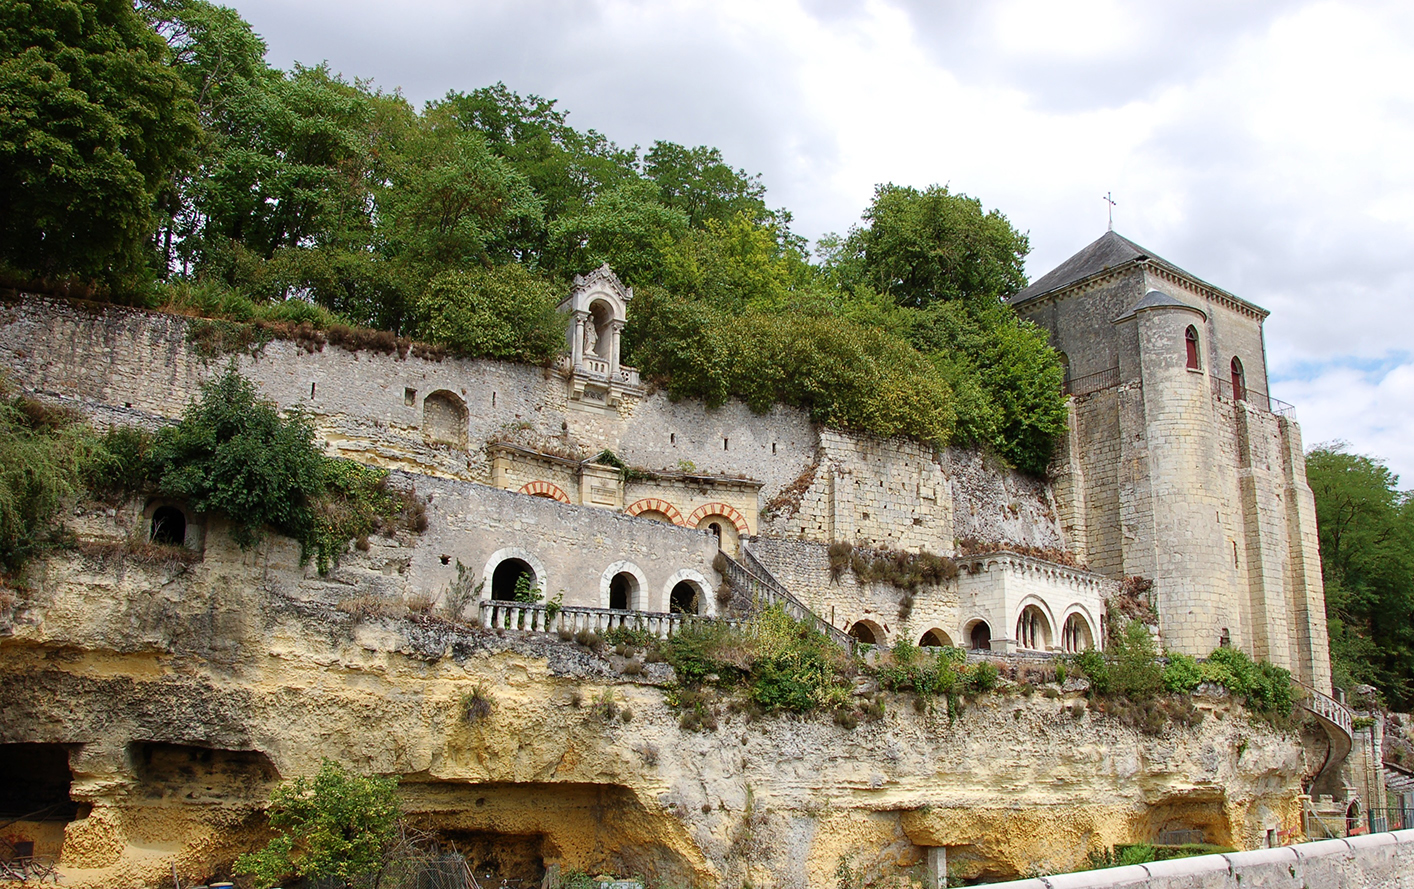 Le coteau à Marmoutier : grottes réaménagées à la fin du 19e siècle et tour des cloches, clocher séparé de l'église romane édifié au 11e siècle.